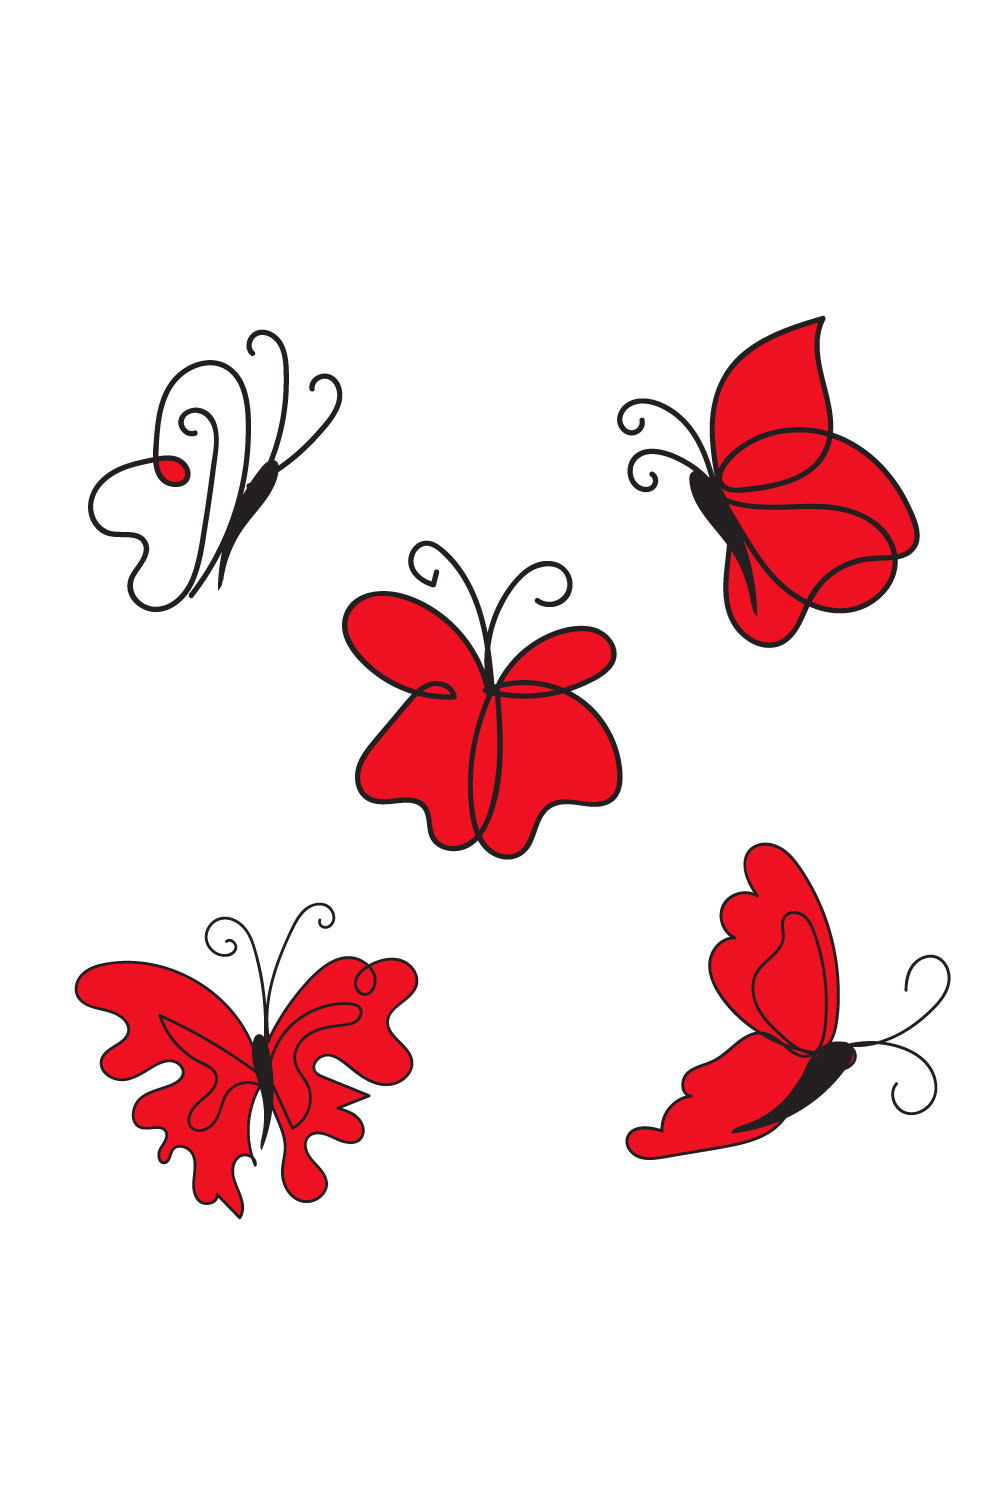 Butterfly Flat Design - Pinterest.